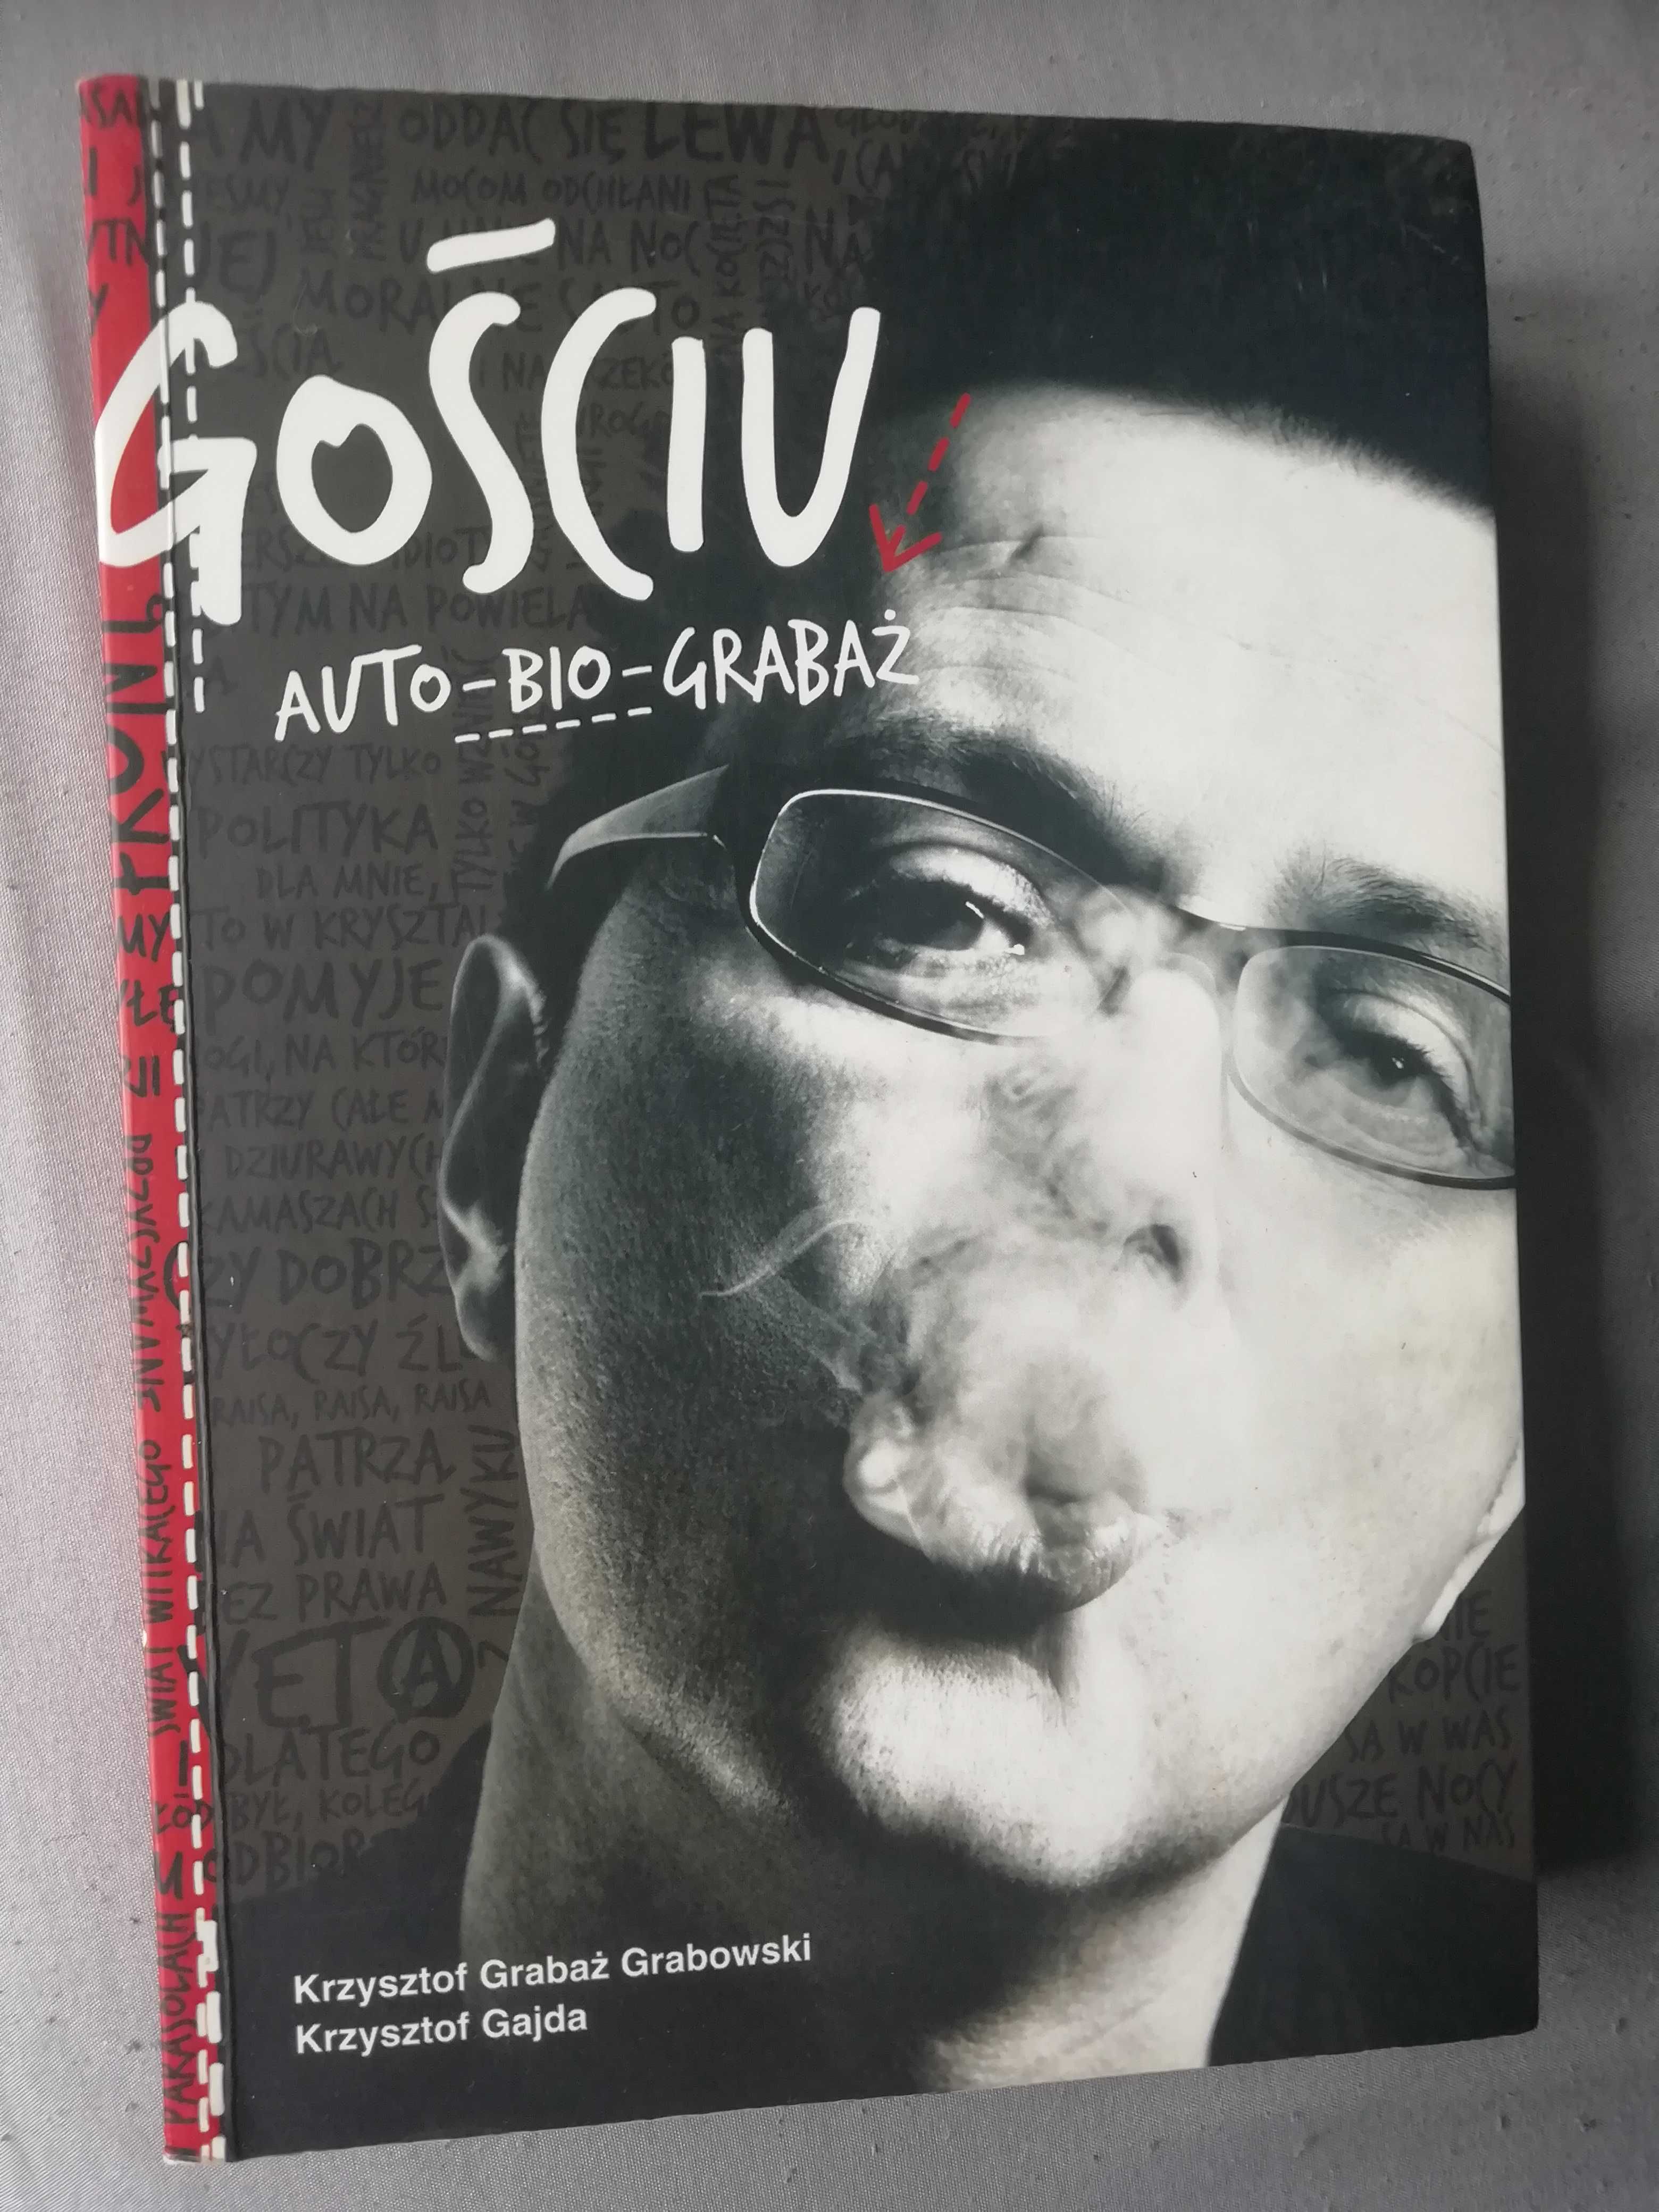 GOŚCIU Auto-bio-Grabaż Krzysztof Grabaż Grabowski Krzysztof Gajda